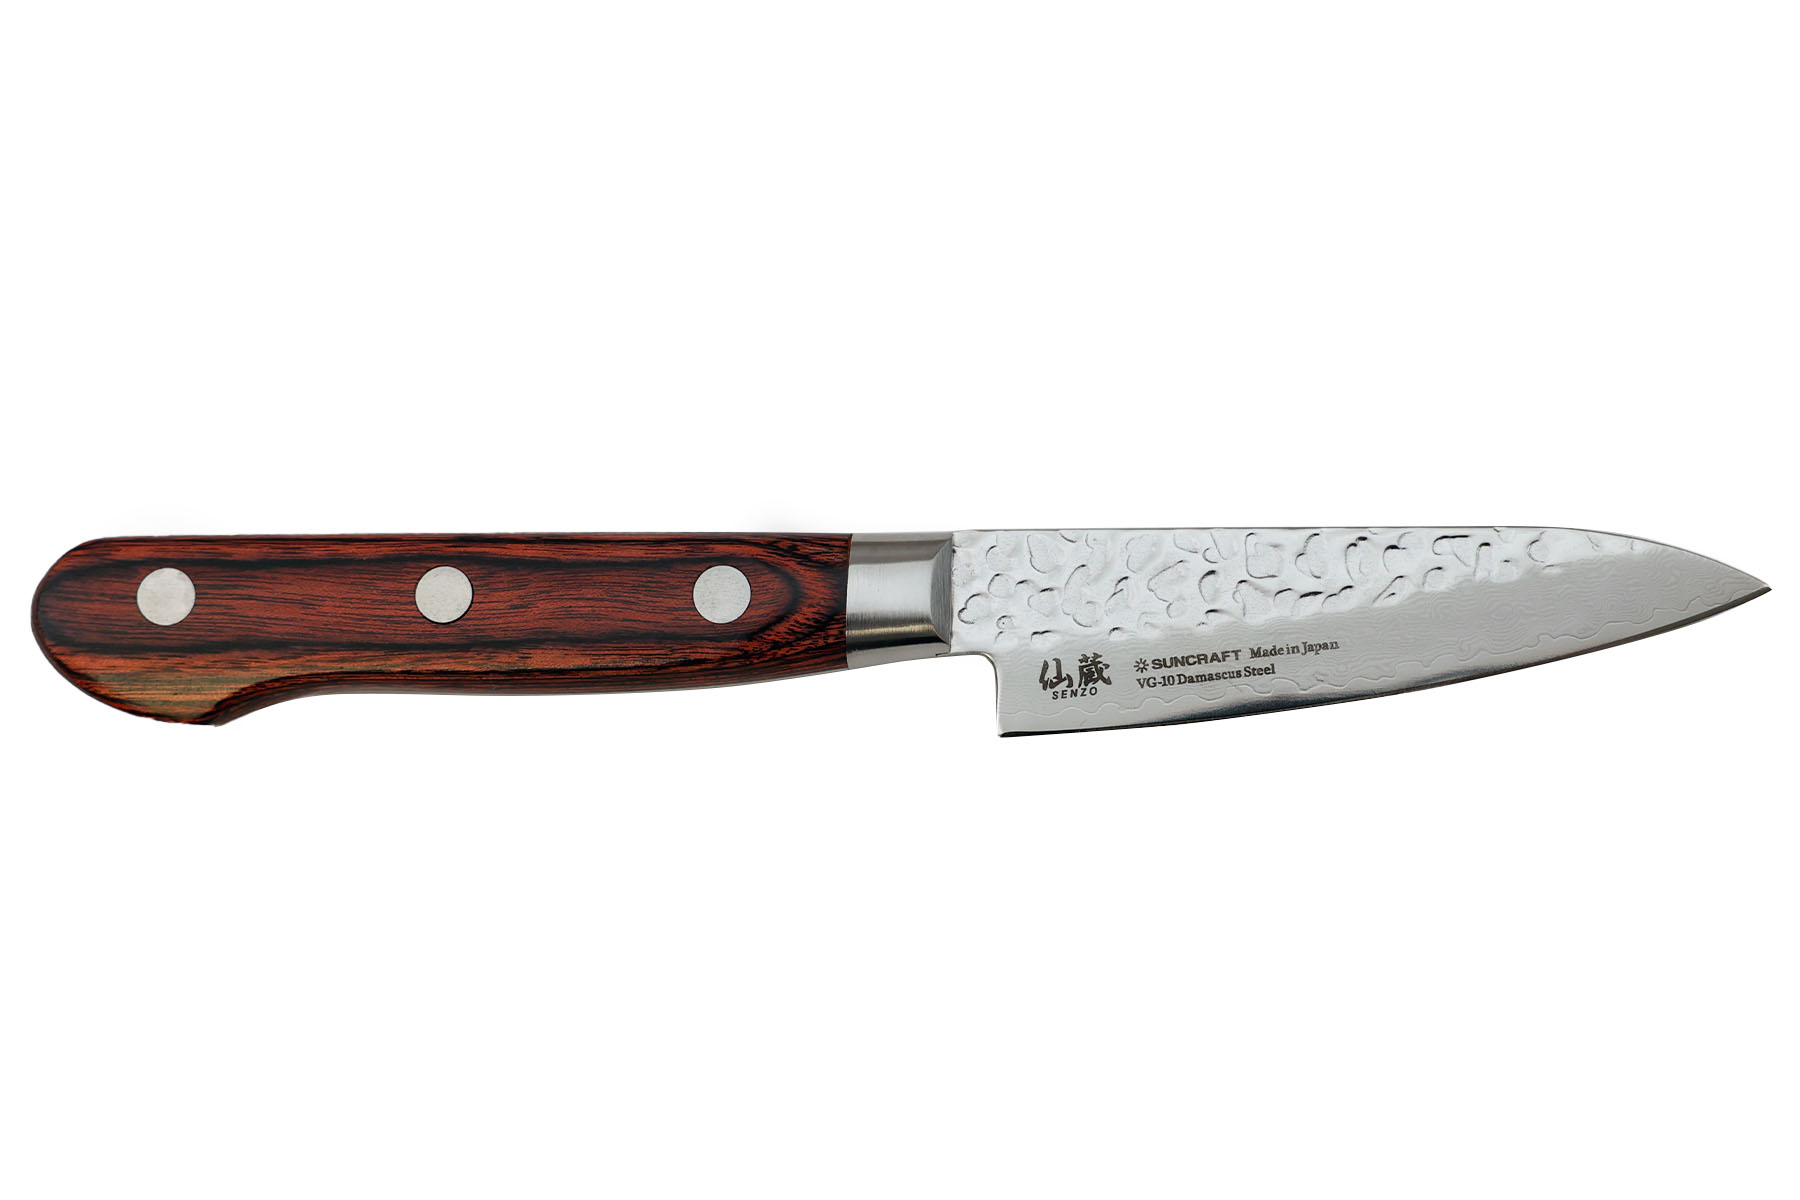 3 pièces de couteau en bois pour enfants, couteaux sûrs pour enfants de 2 à  8